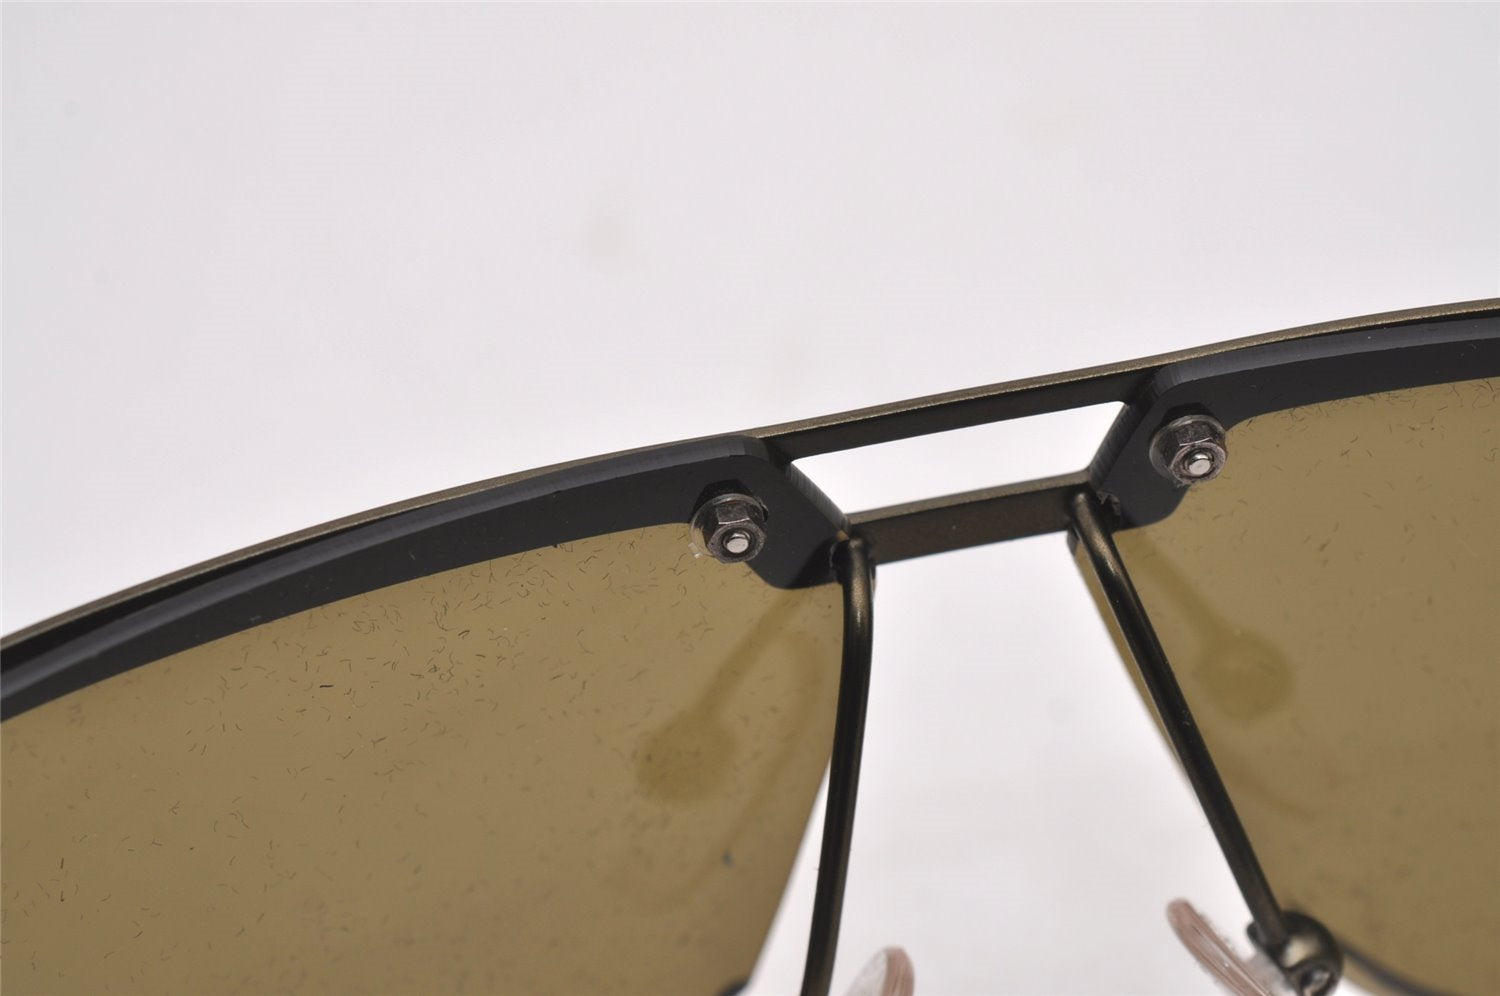 Authentic GUCCI Vintage Sunglasses Titanium GG 1725/S Khaki Green 2326I